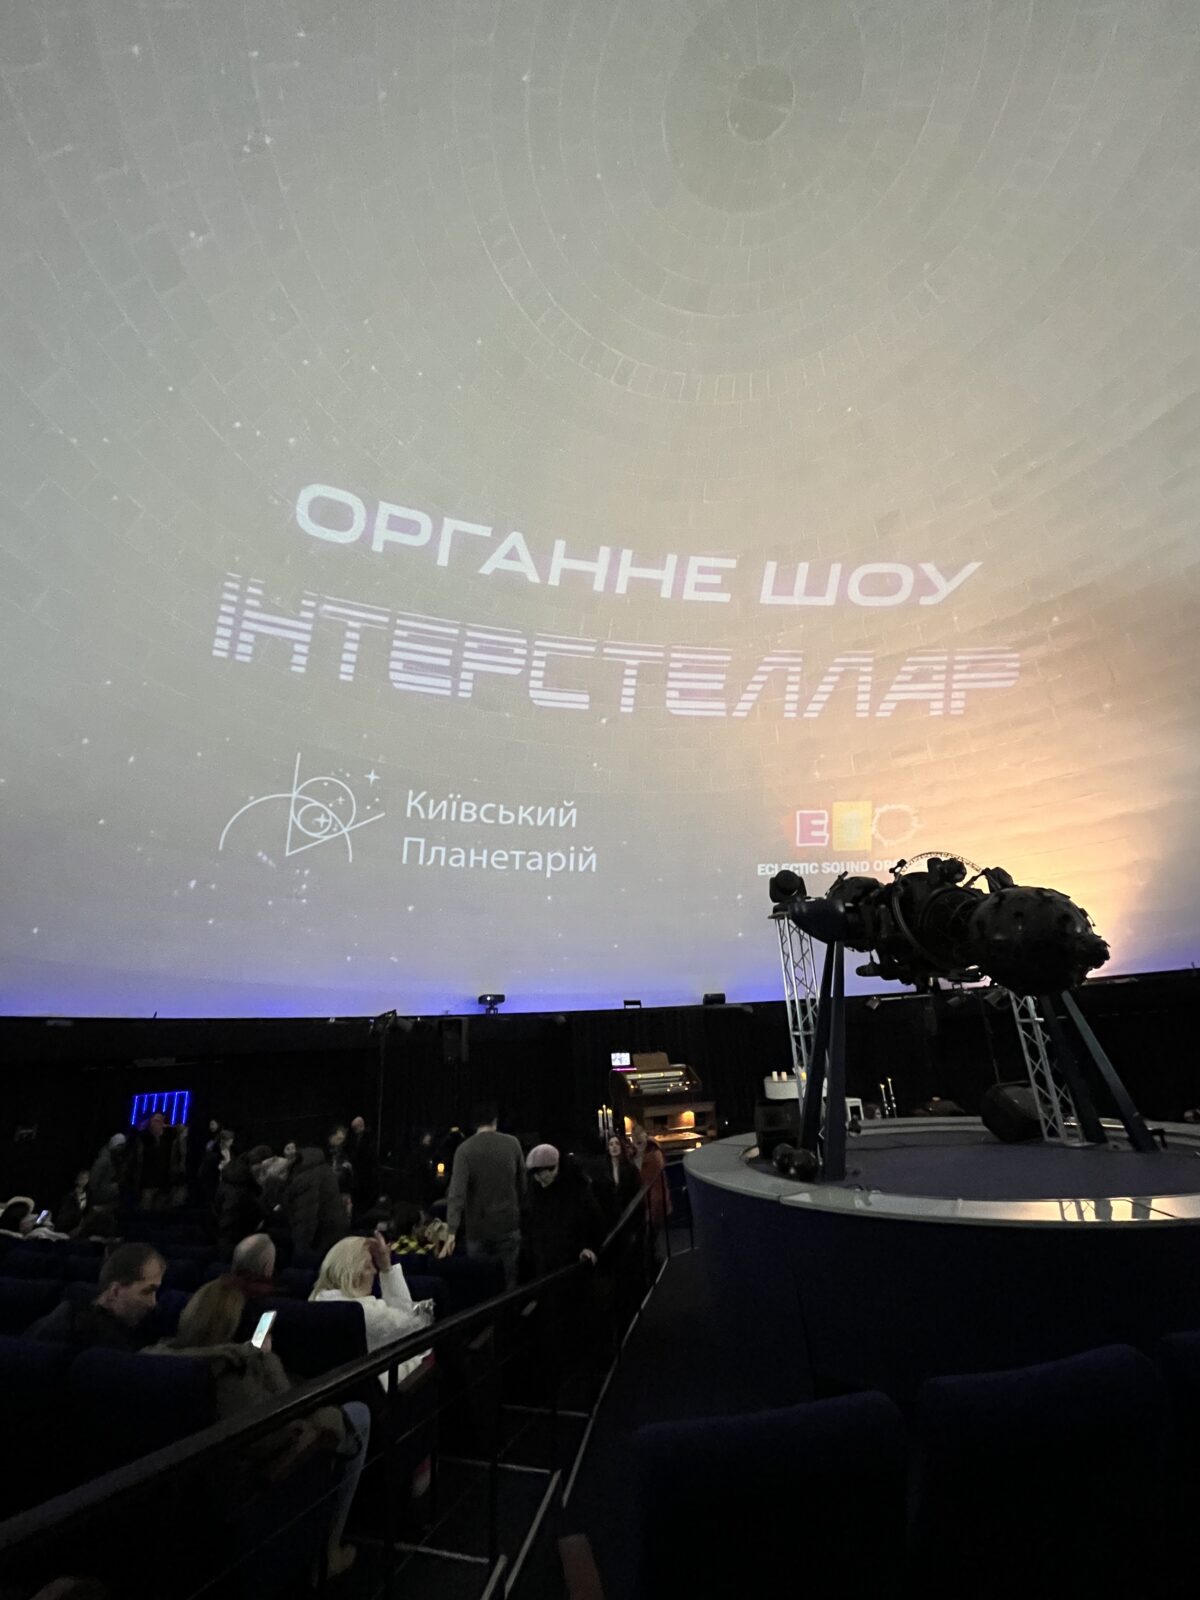 Відеоряд у зоряній залі київського планетарію під час вечірнього шоу